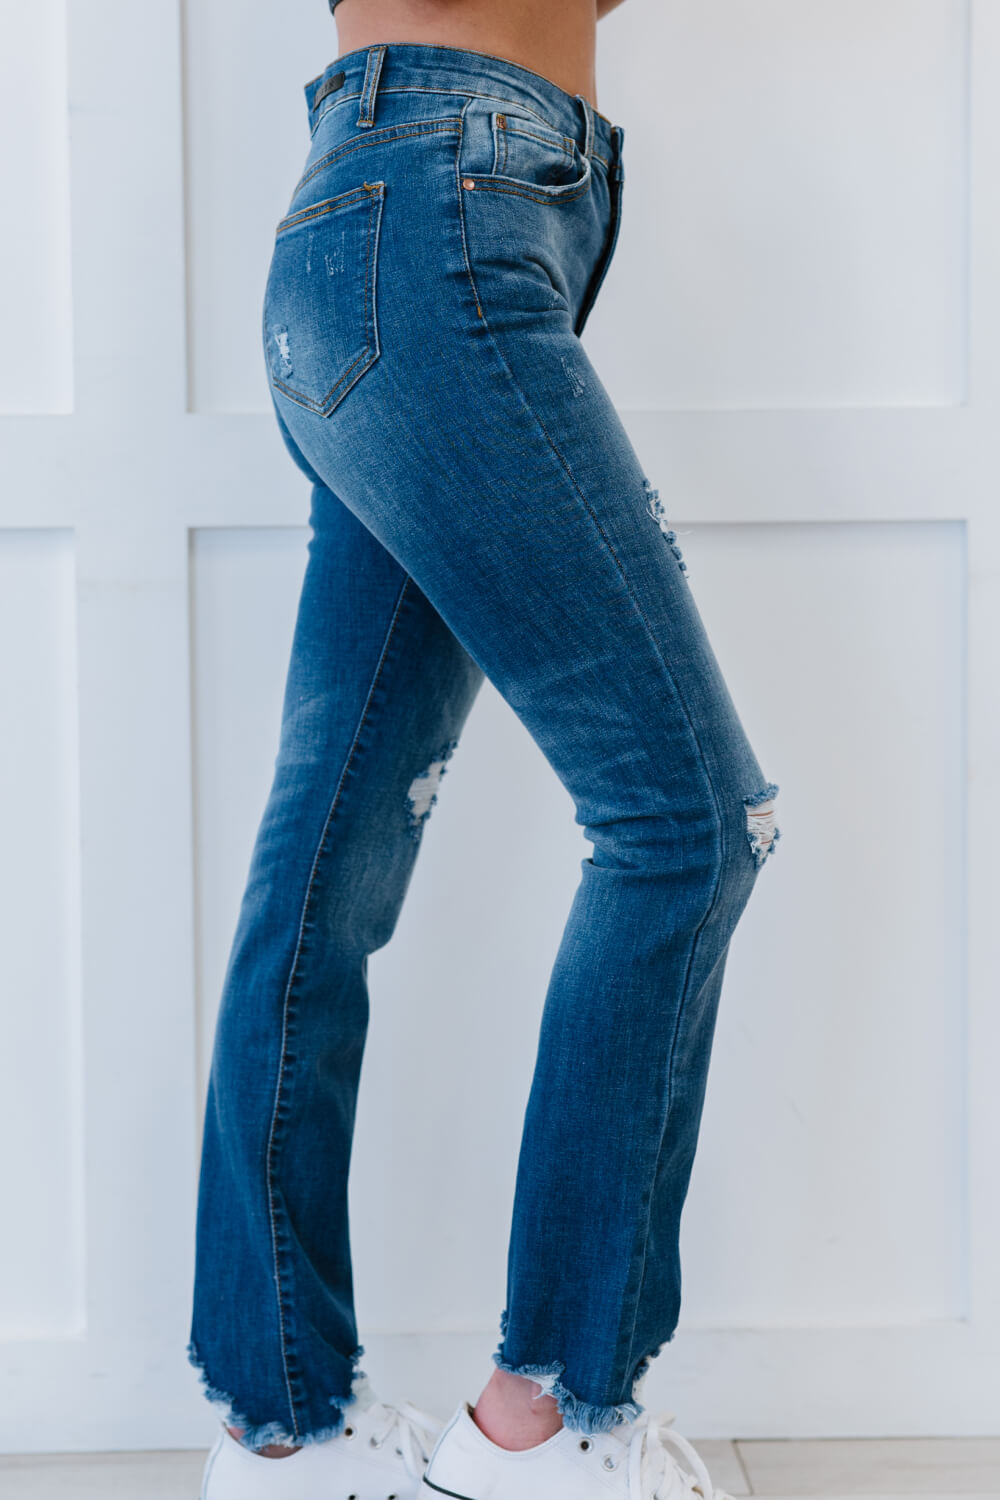 RISEN Traveler Full Size Run High-Waisted Straight Jeans